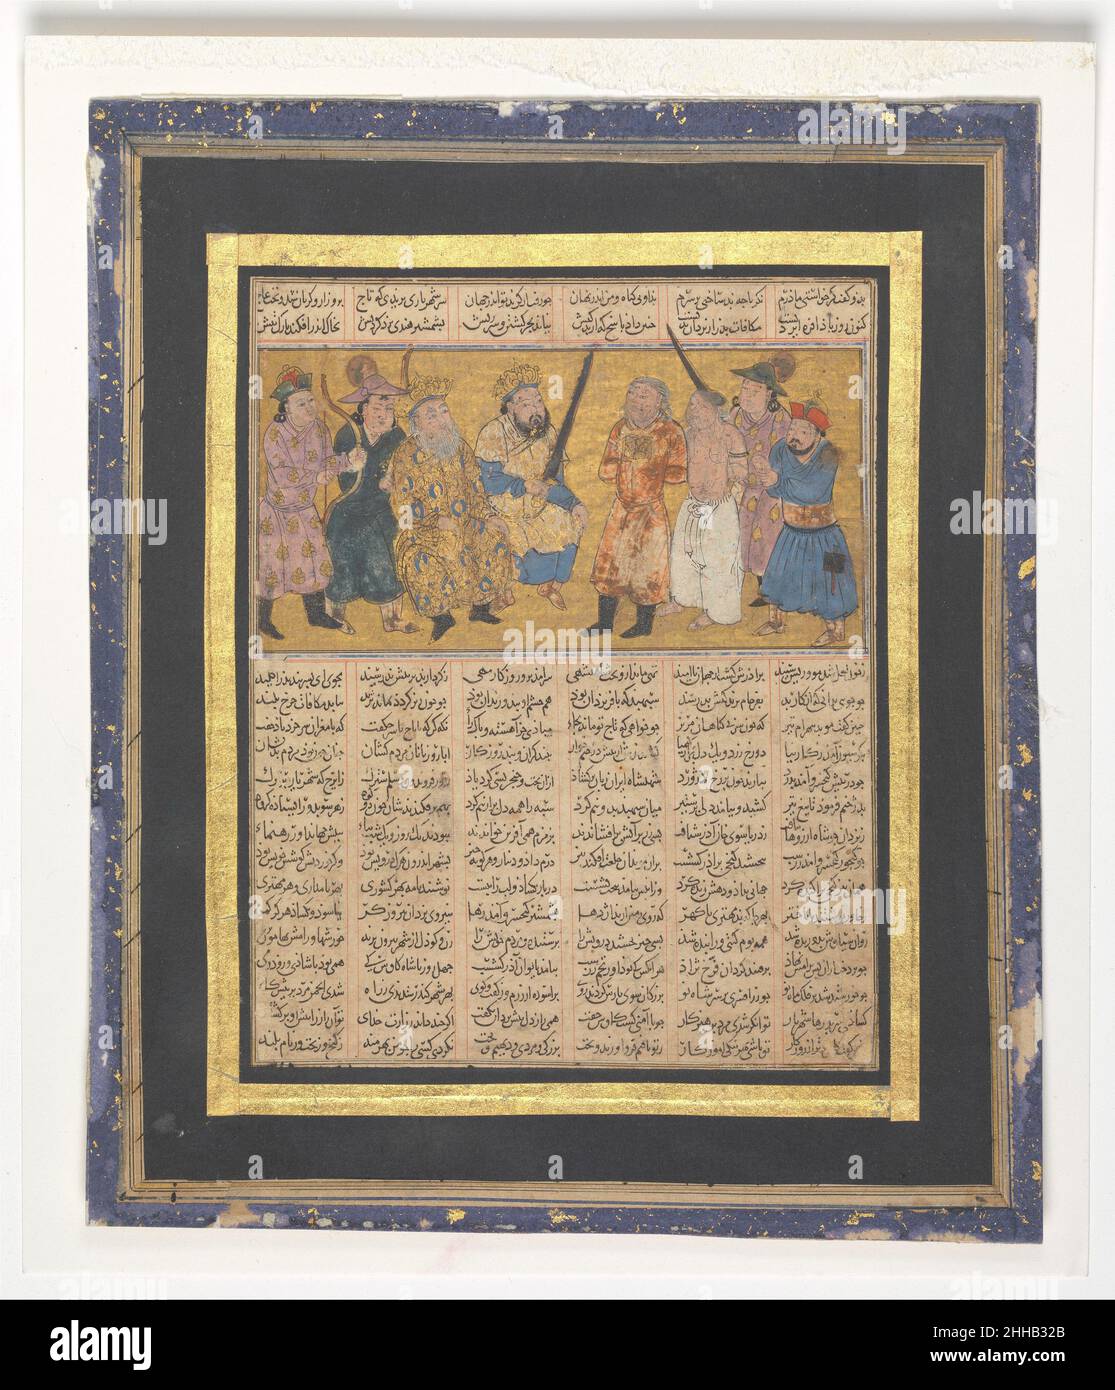 'Kai Khusrau thront mit einem Schwert', Folio aus dem ersten kleinen Shahnama (Buch der Könige) ca. 1300–30 Abu'l Qasim Firdausi Diese Abbildung aus dem Shahnama zeigt Kai Khusrau auf seinem Thron, der das Schwert hält, mit dem er Afrasiyab für den Mord an Siyavush hinrichten wird, gebunden und vor ihm stehend. Neben Afrasiyab ist sein Bruder Garsivaz, der eigentliche Mörder von Siyavush, und hinter ihm ist ein Henker mit gezogenem Schwert. Der ältere Kai Kavus, Großvater von Kai Khusrau, sitzt neben seinem Enkel. Trotz der düsteren Szene ist der Stil zart und höfisch, wie es sich für OR gehört Stockfoto